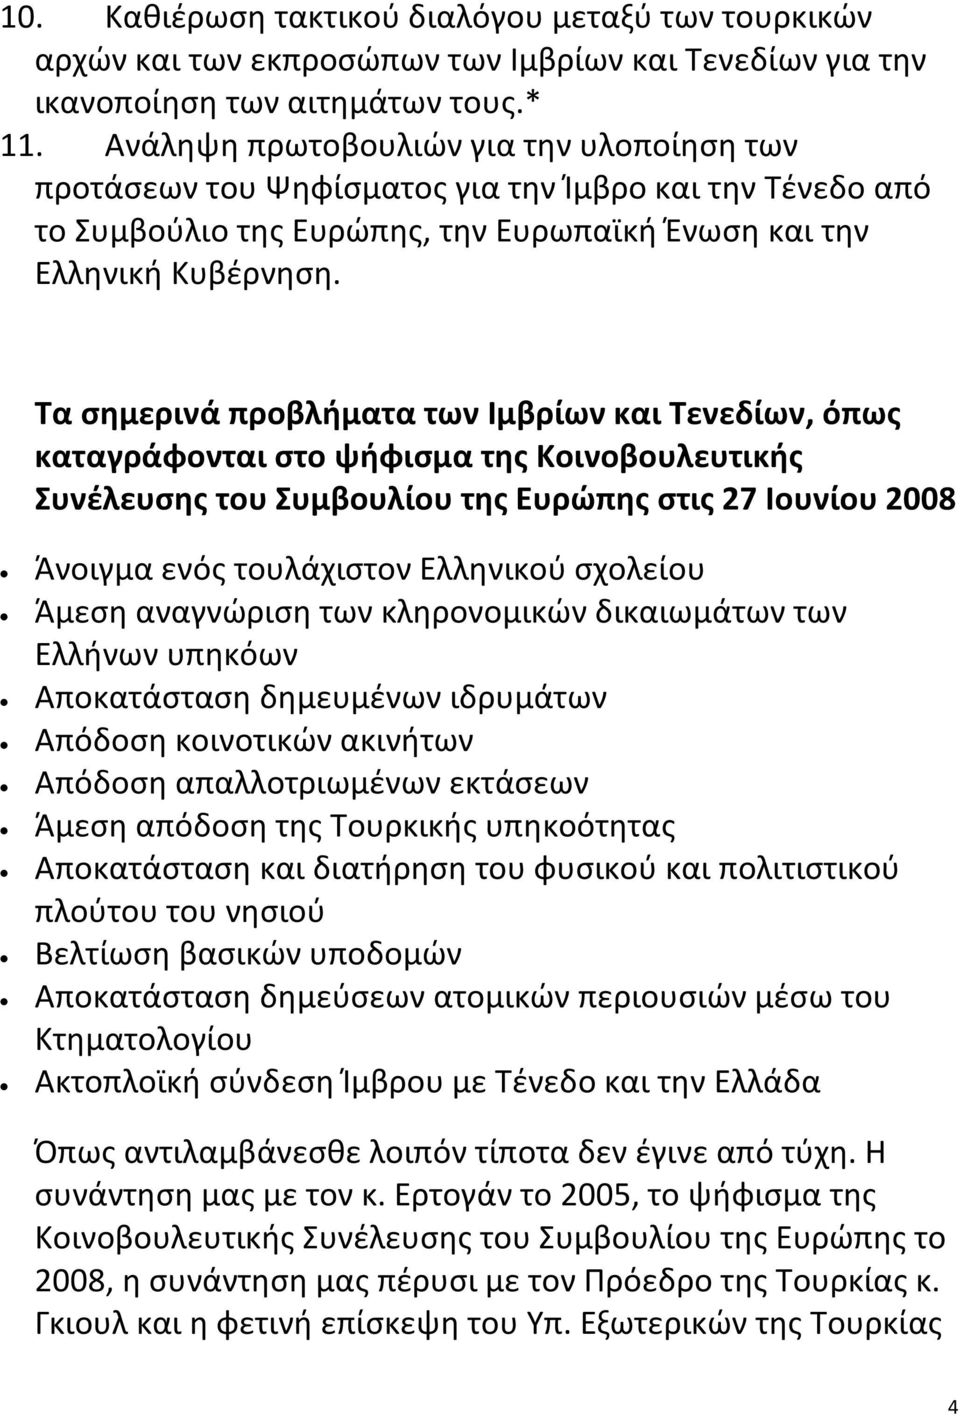 Τα σημερινά προβλήματα των Ιμβρίων και Τενεδίων, όπως καταγράφονται στο ψήφισμα της Κοινοβουλευτικής Συνέλευσης του Συμβουλίου της Ευρώπης στις 27 Ιουνίου 2008 Άνοιγμα ενός τουλάχιστον Ελληνικού